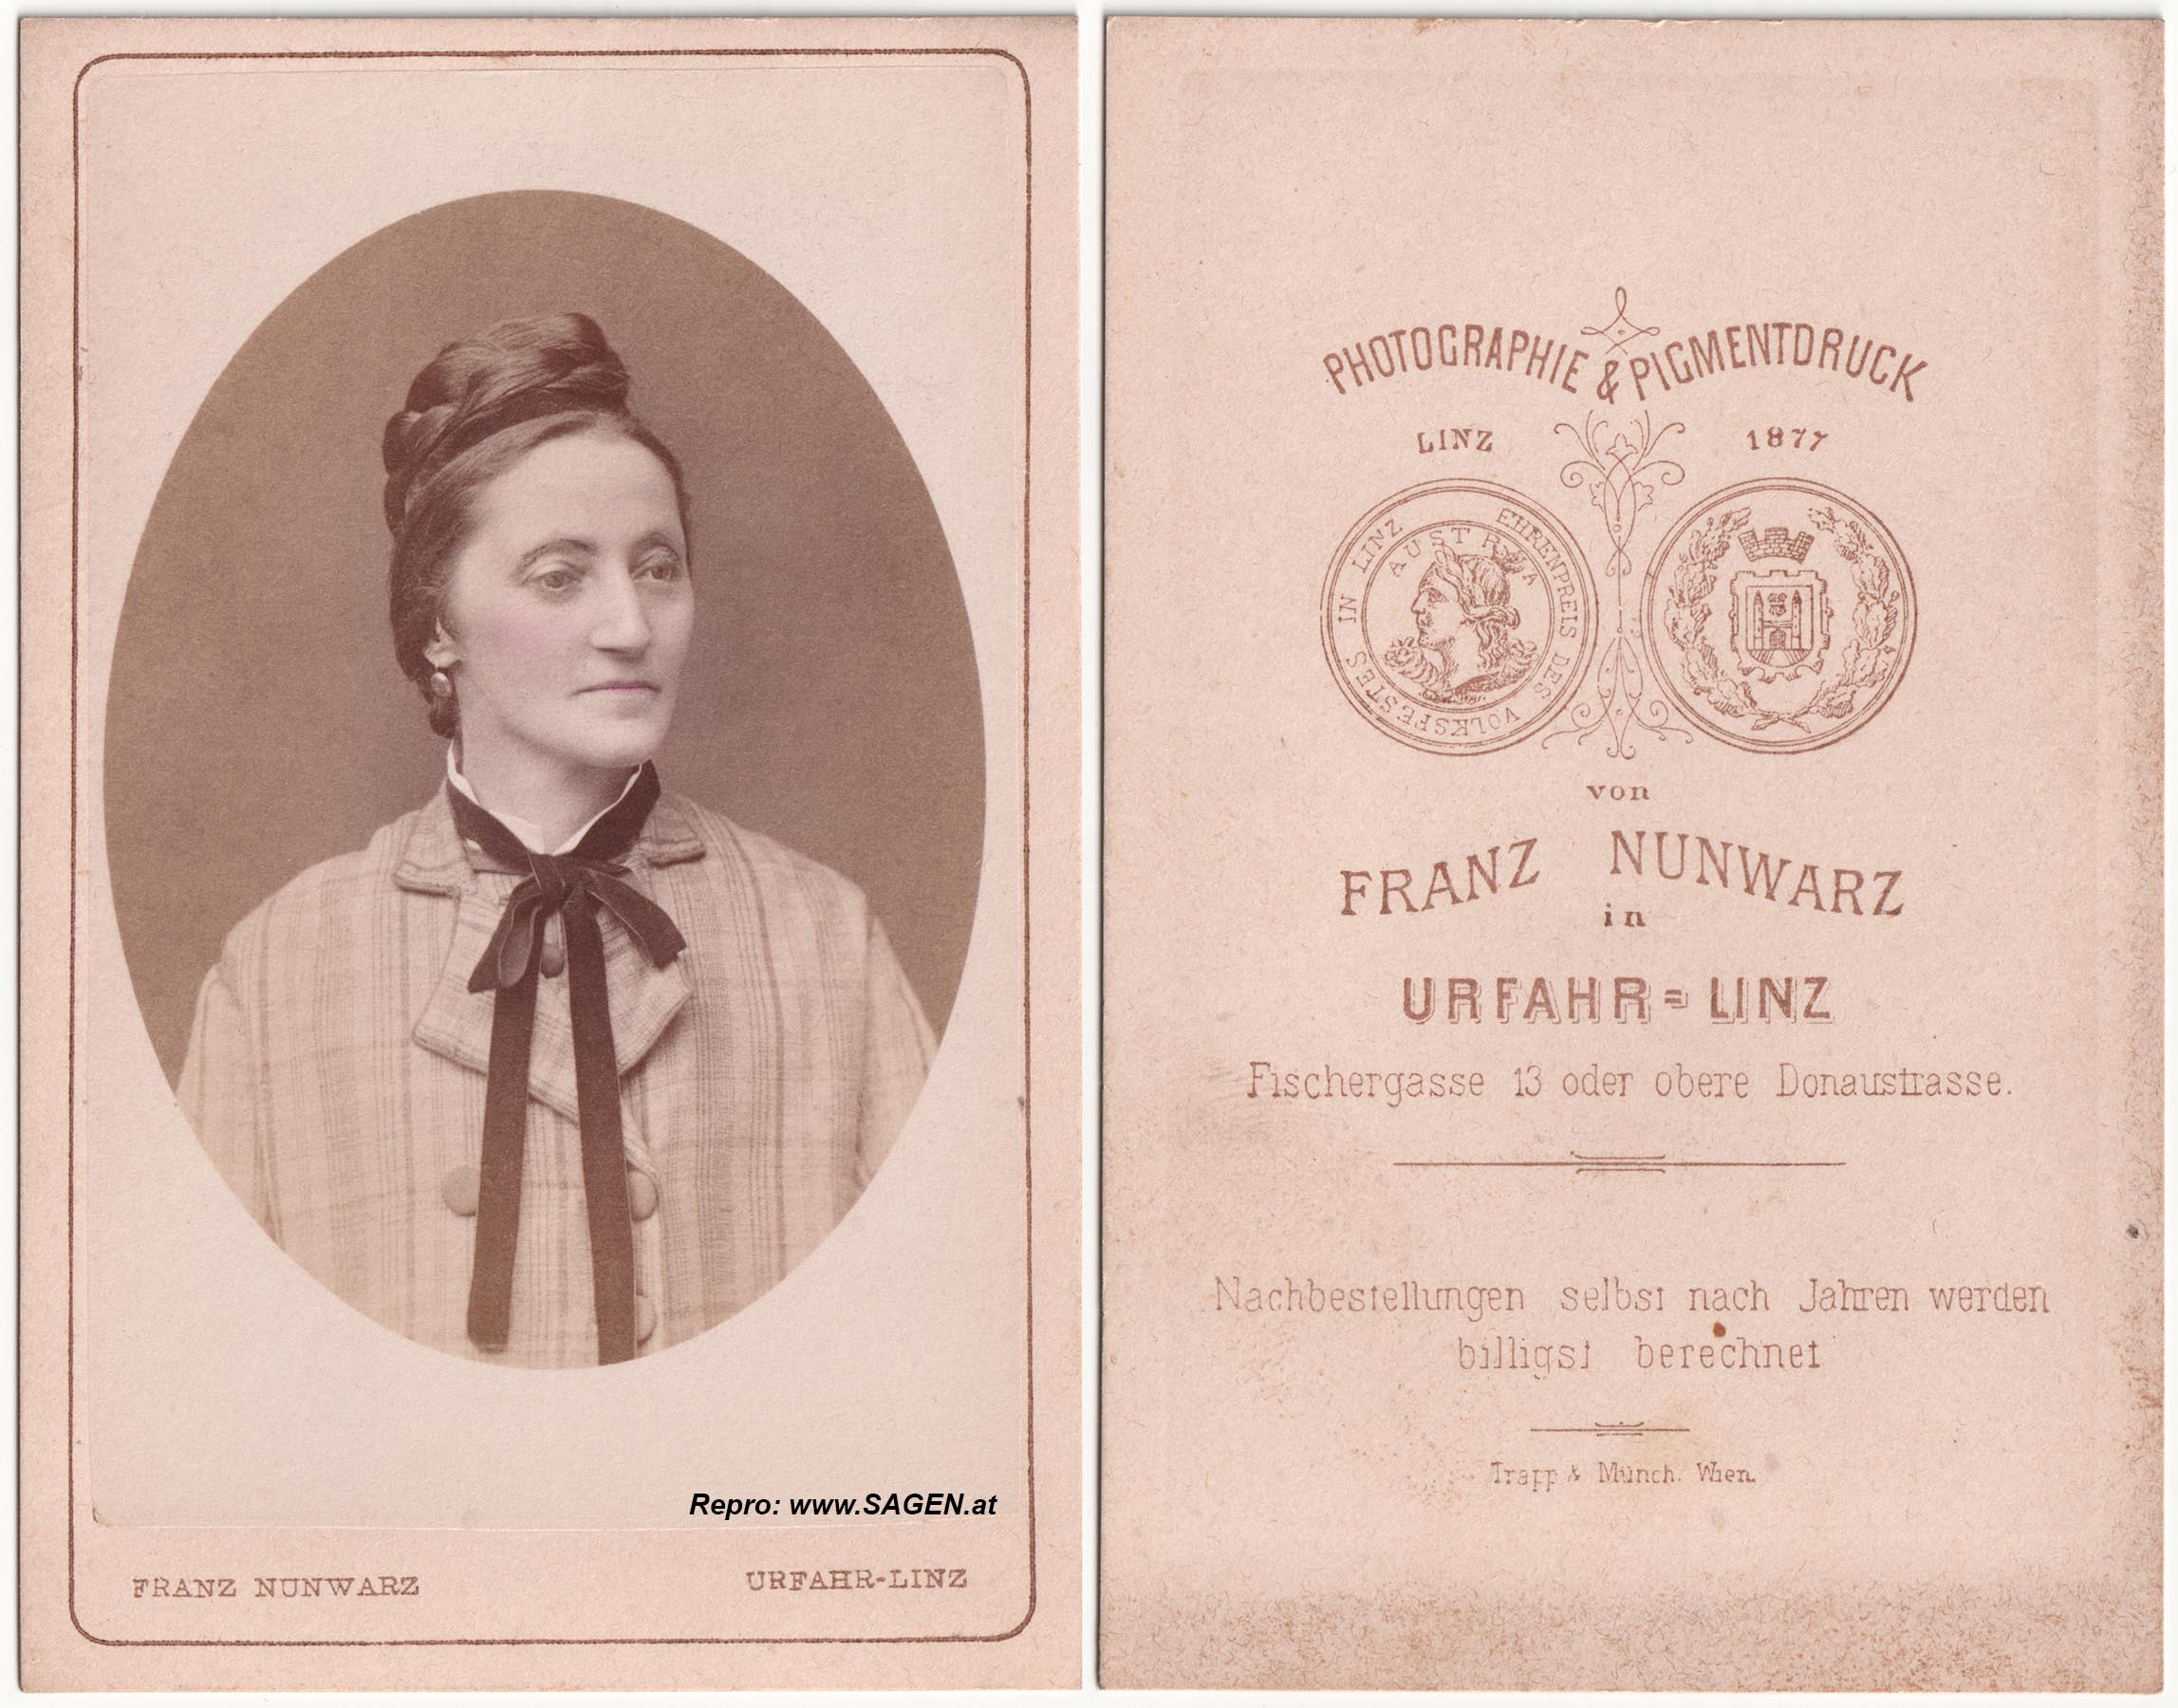 Porträt einer Dame bei Fotografie Franz Nunwarz in Linz-Urfahr um 1877